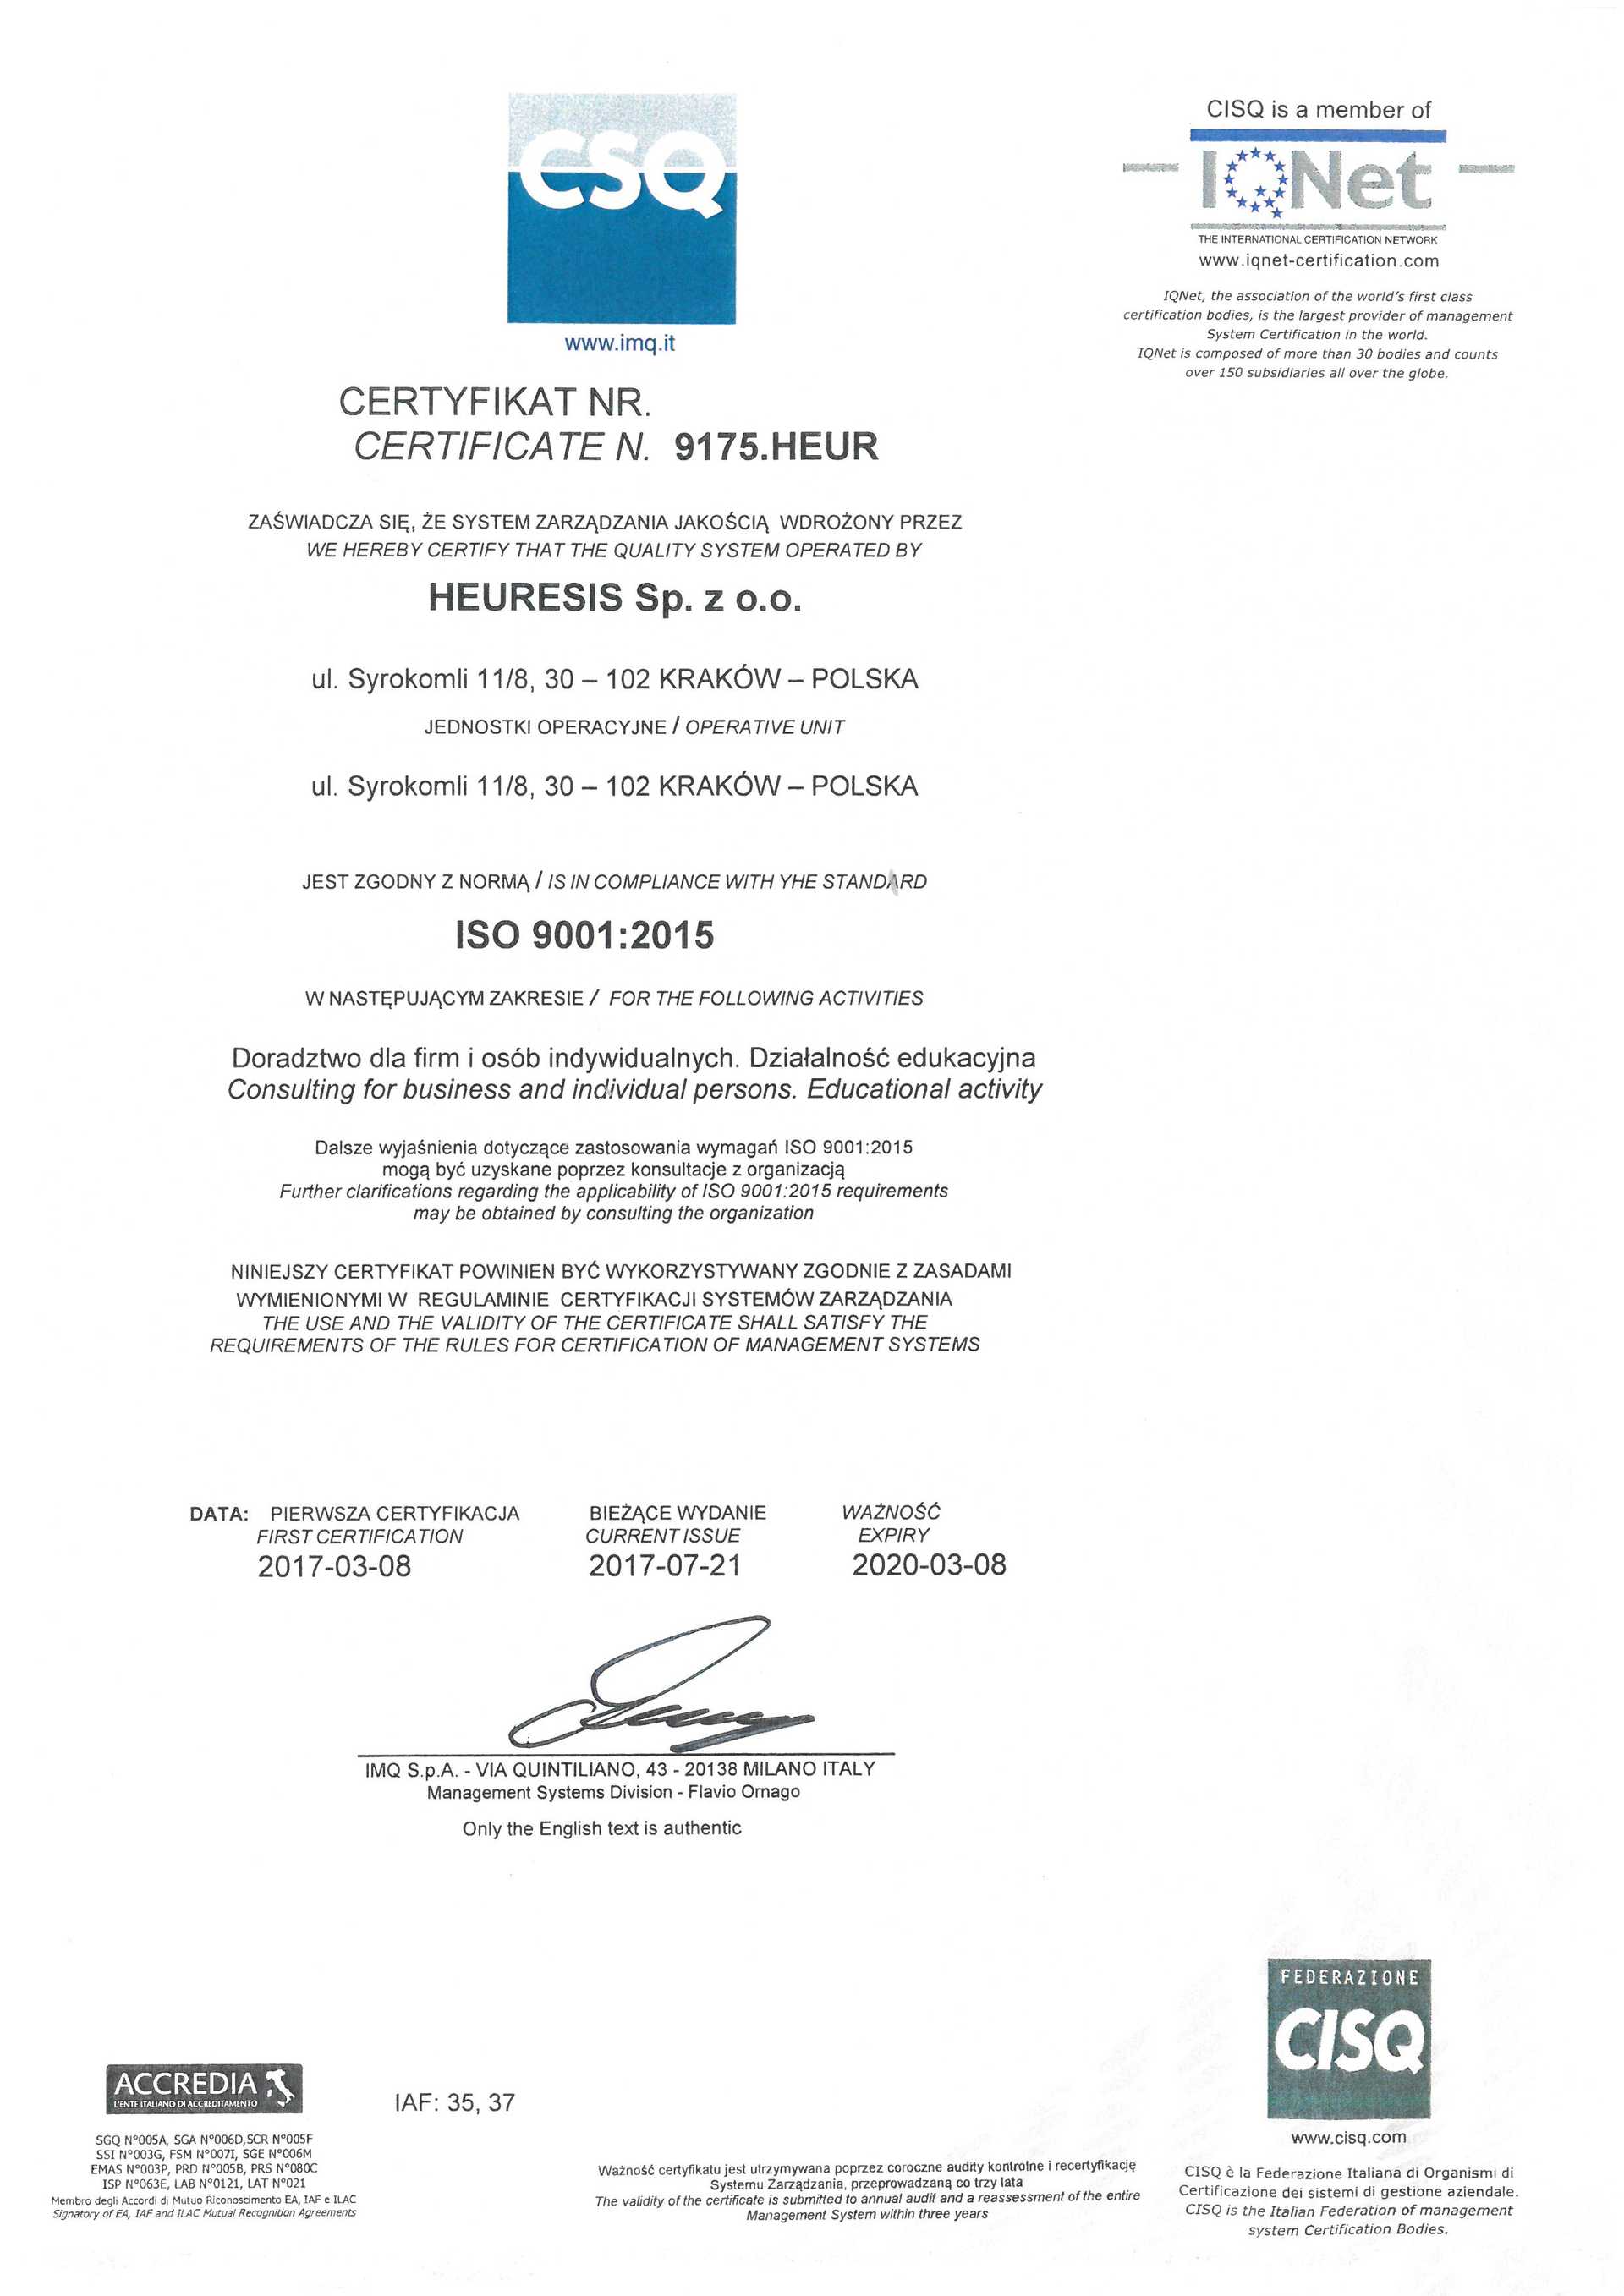 Pierwsza certyfikacja ISO 9001:1994